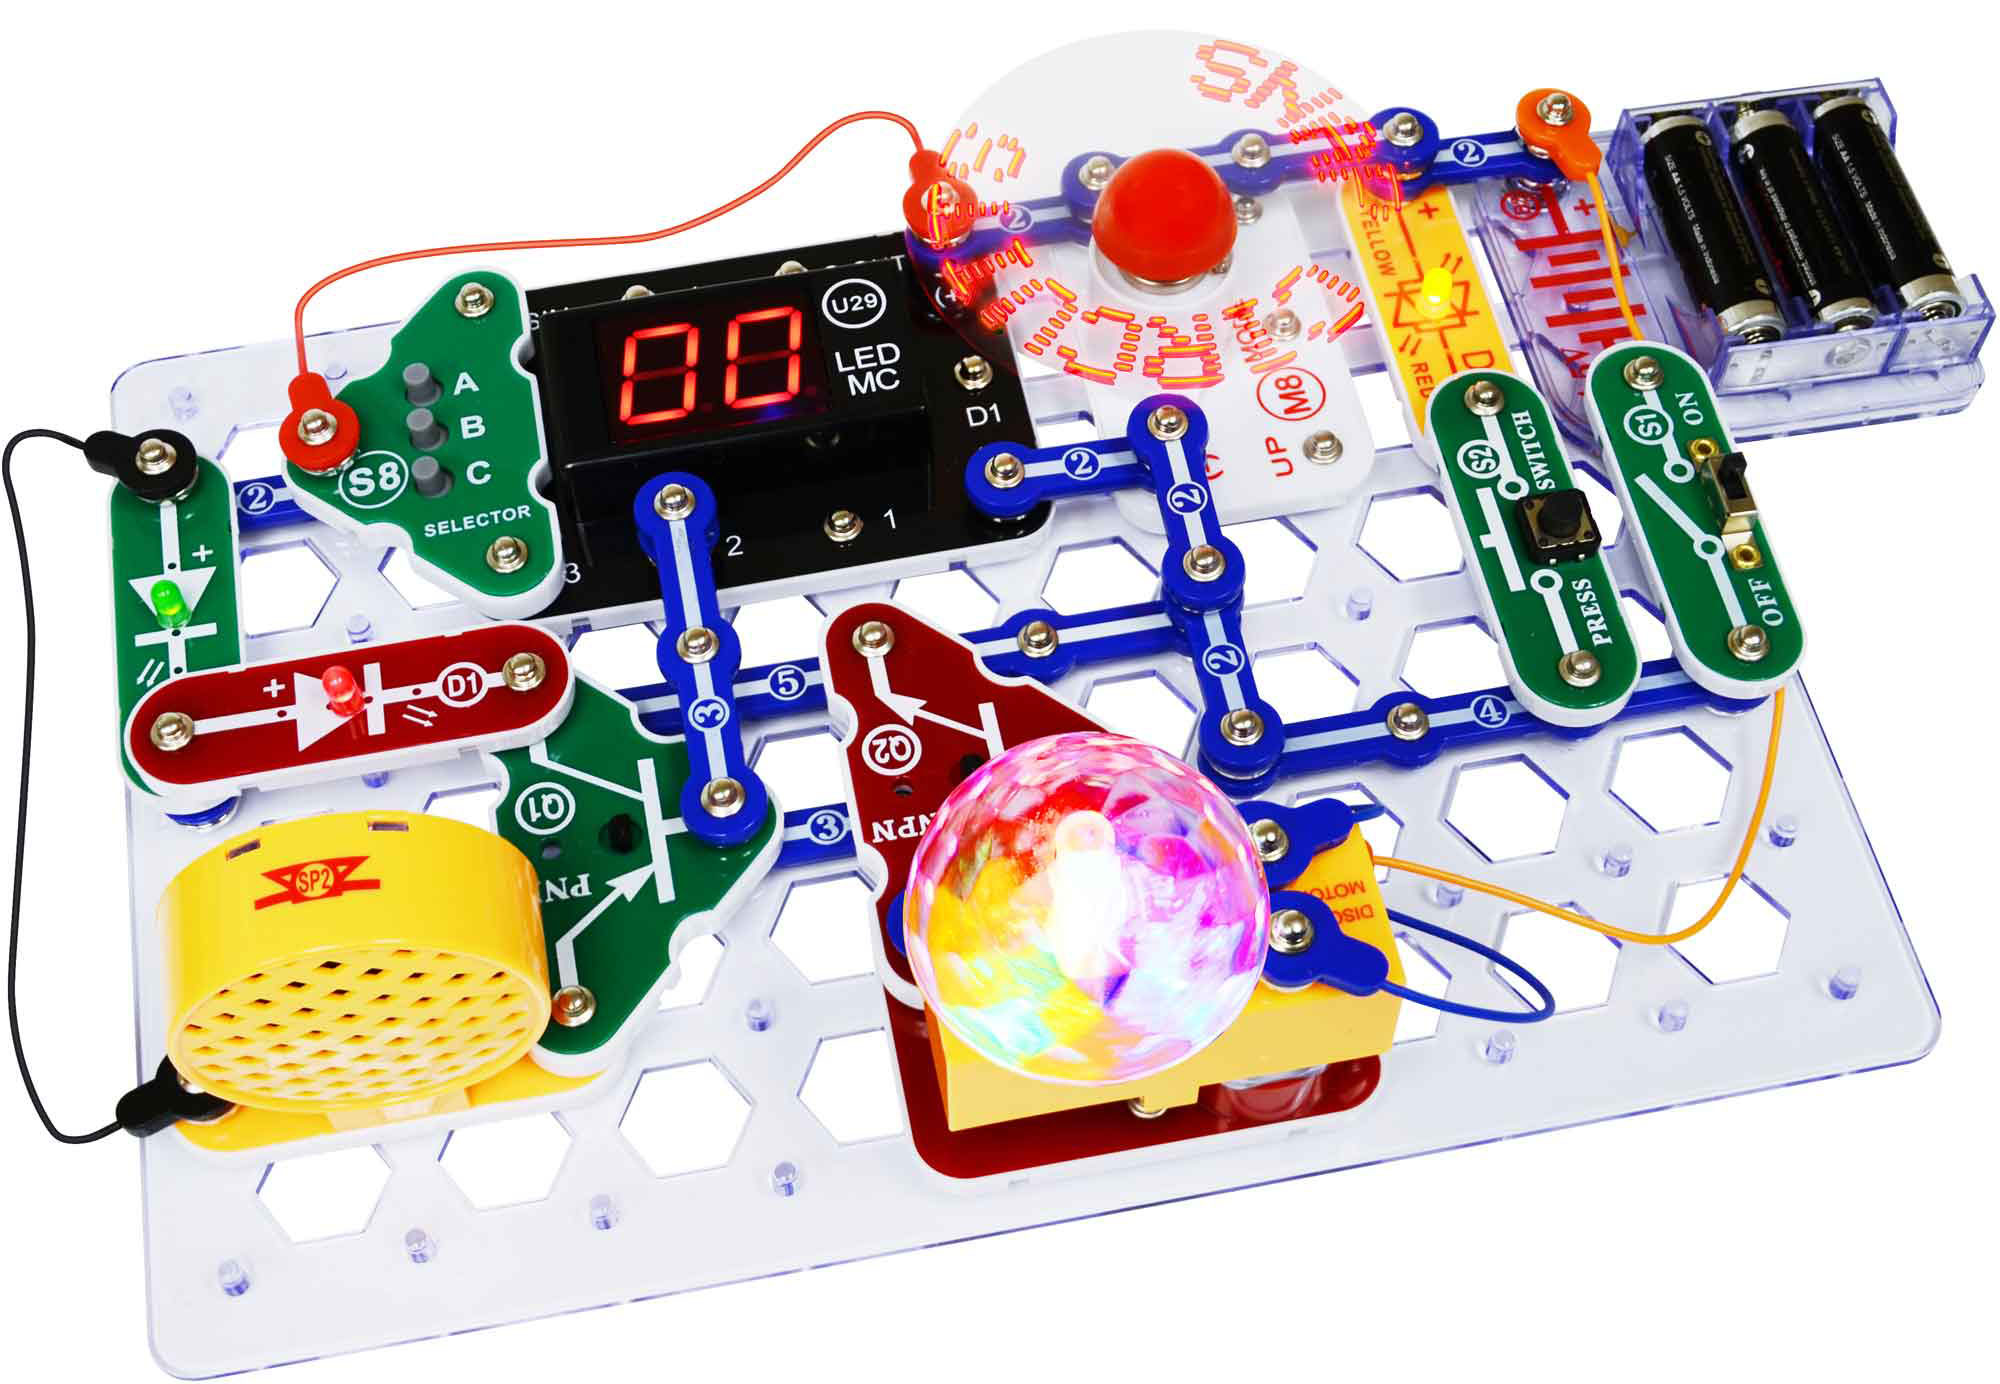 Kit d'expérimentation Snap Circuit Arcade- Cliquer pour agrandir